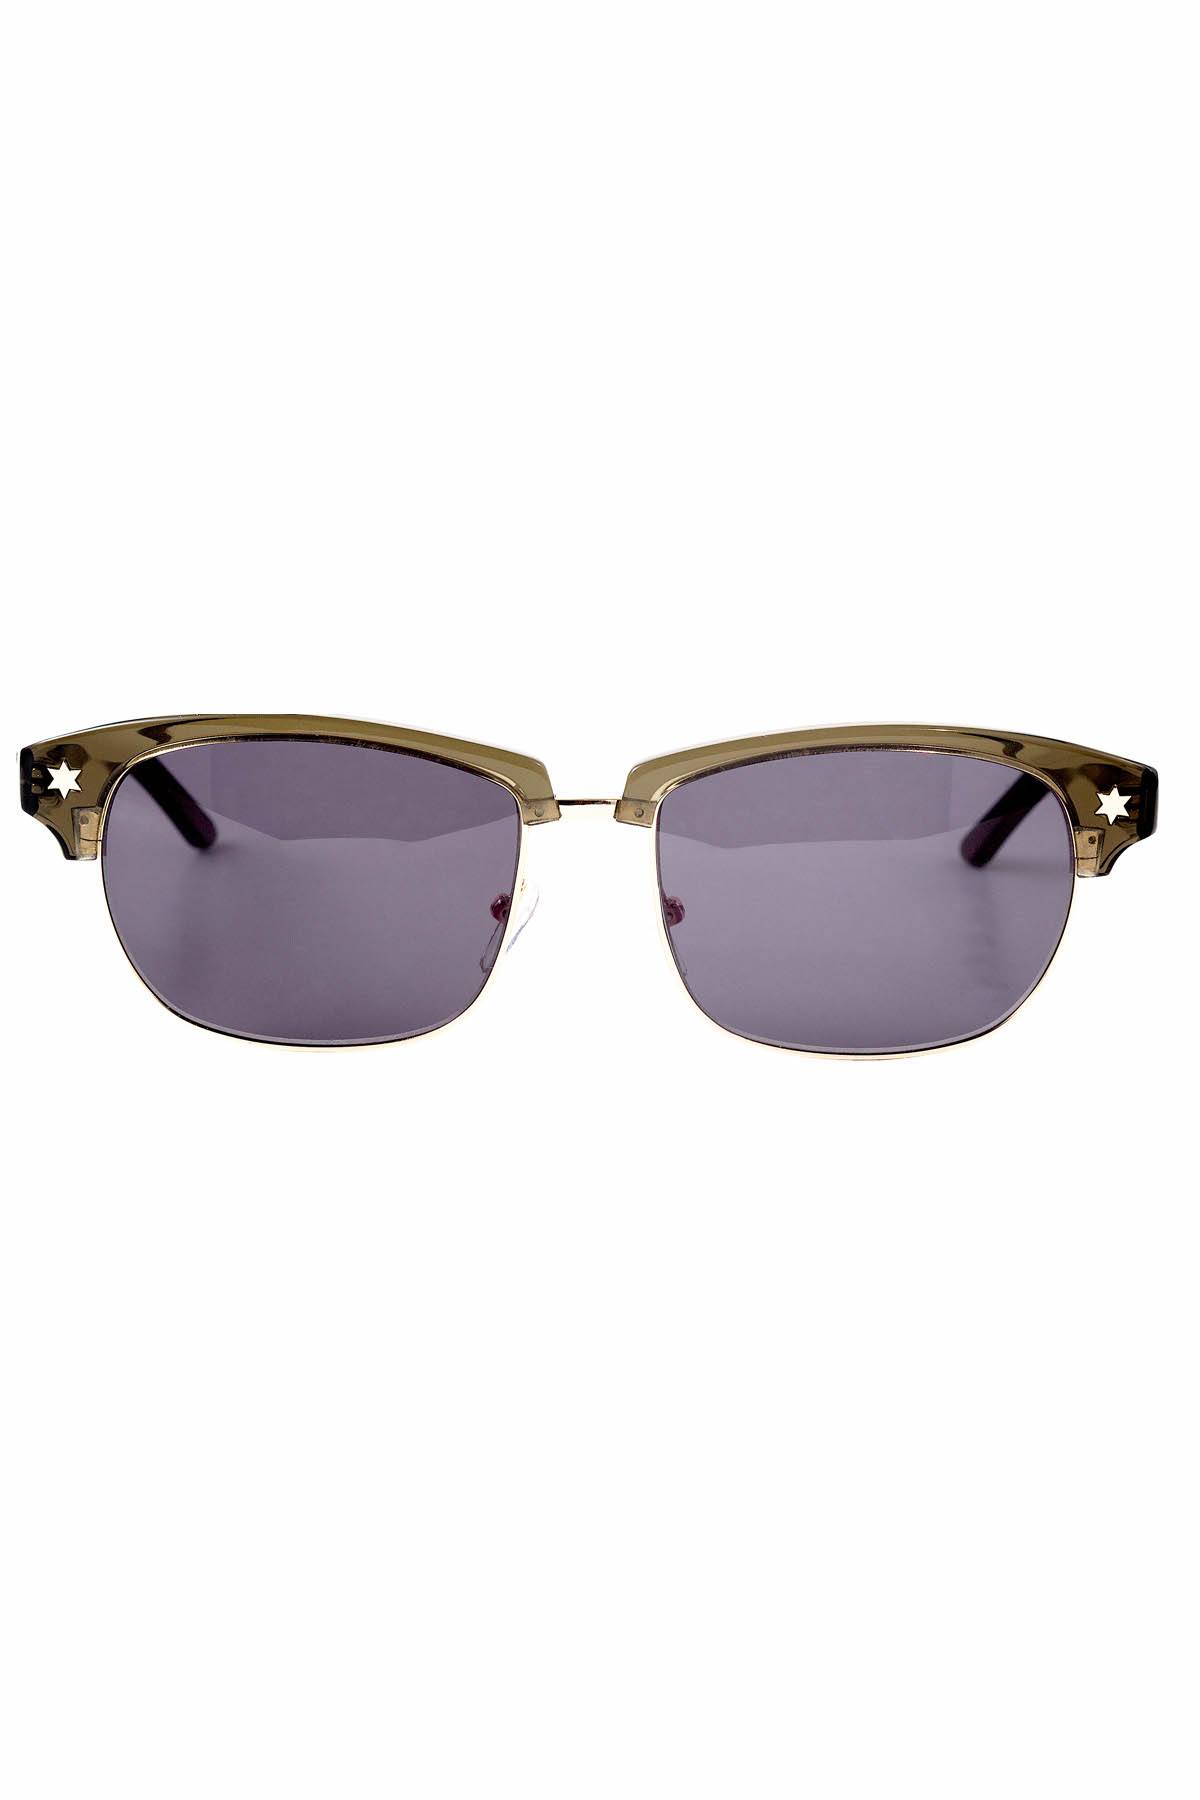 Neo-Ne Olive Green U+2721 Sunglasses